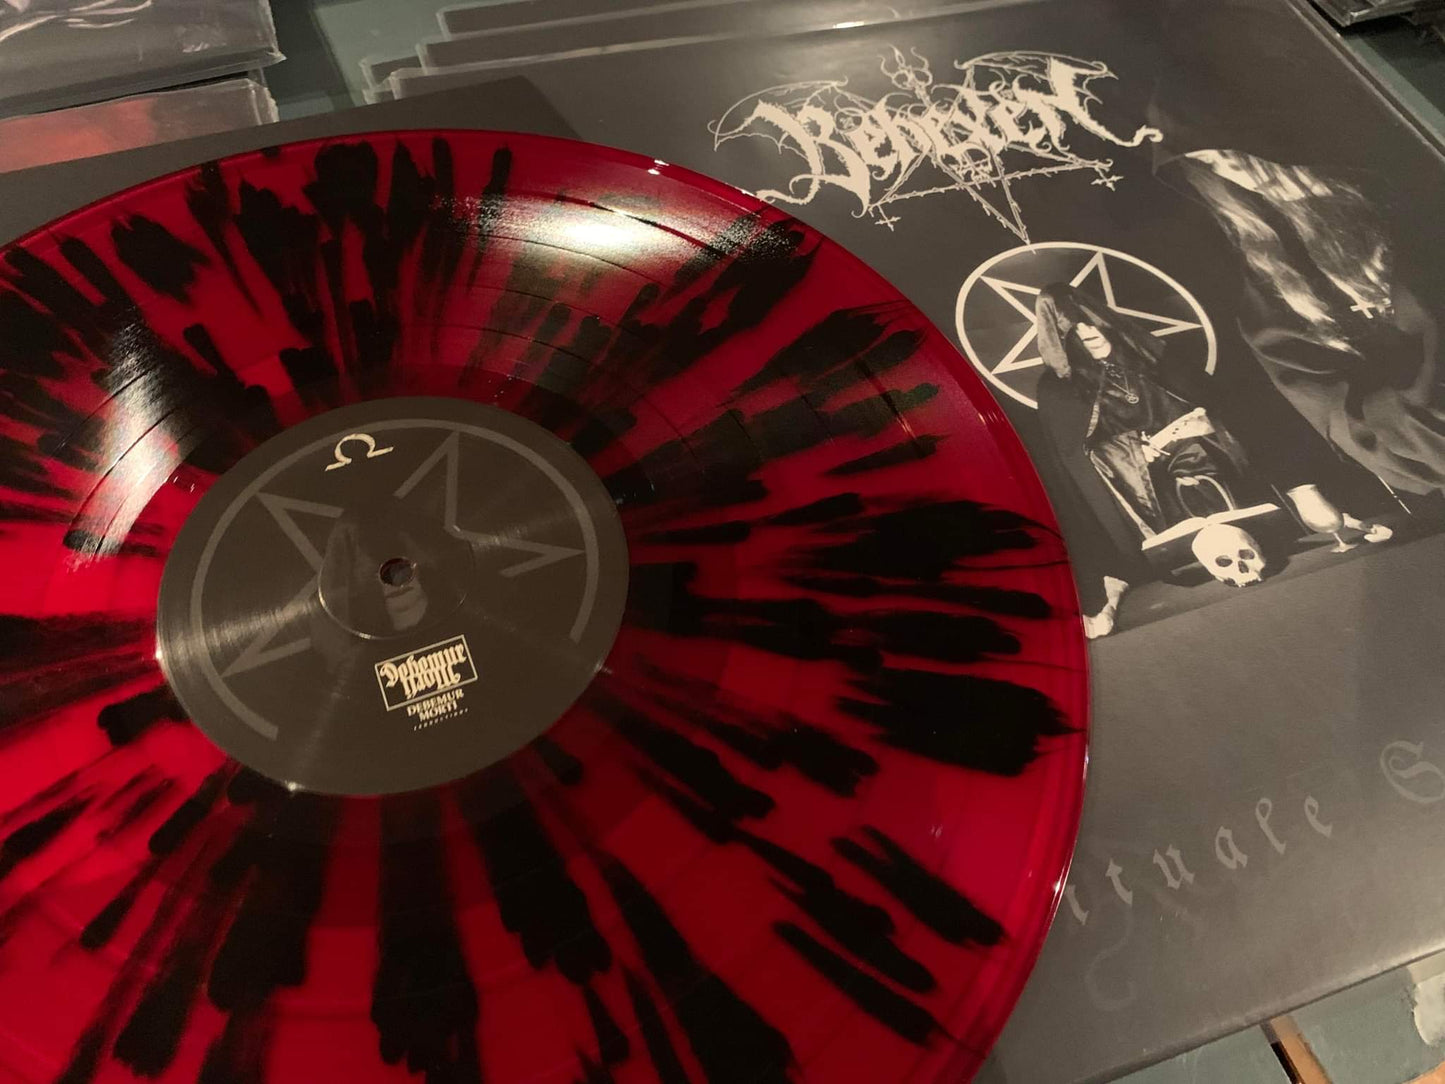 Behexen - Rituale Satanum LP